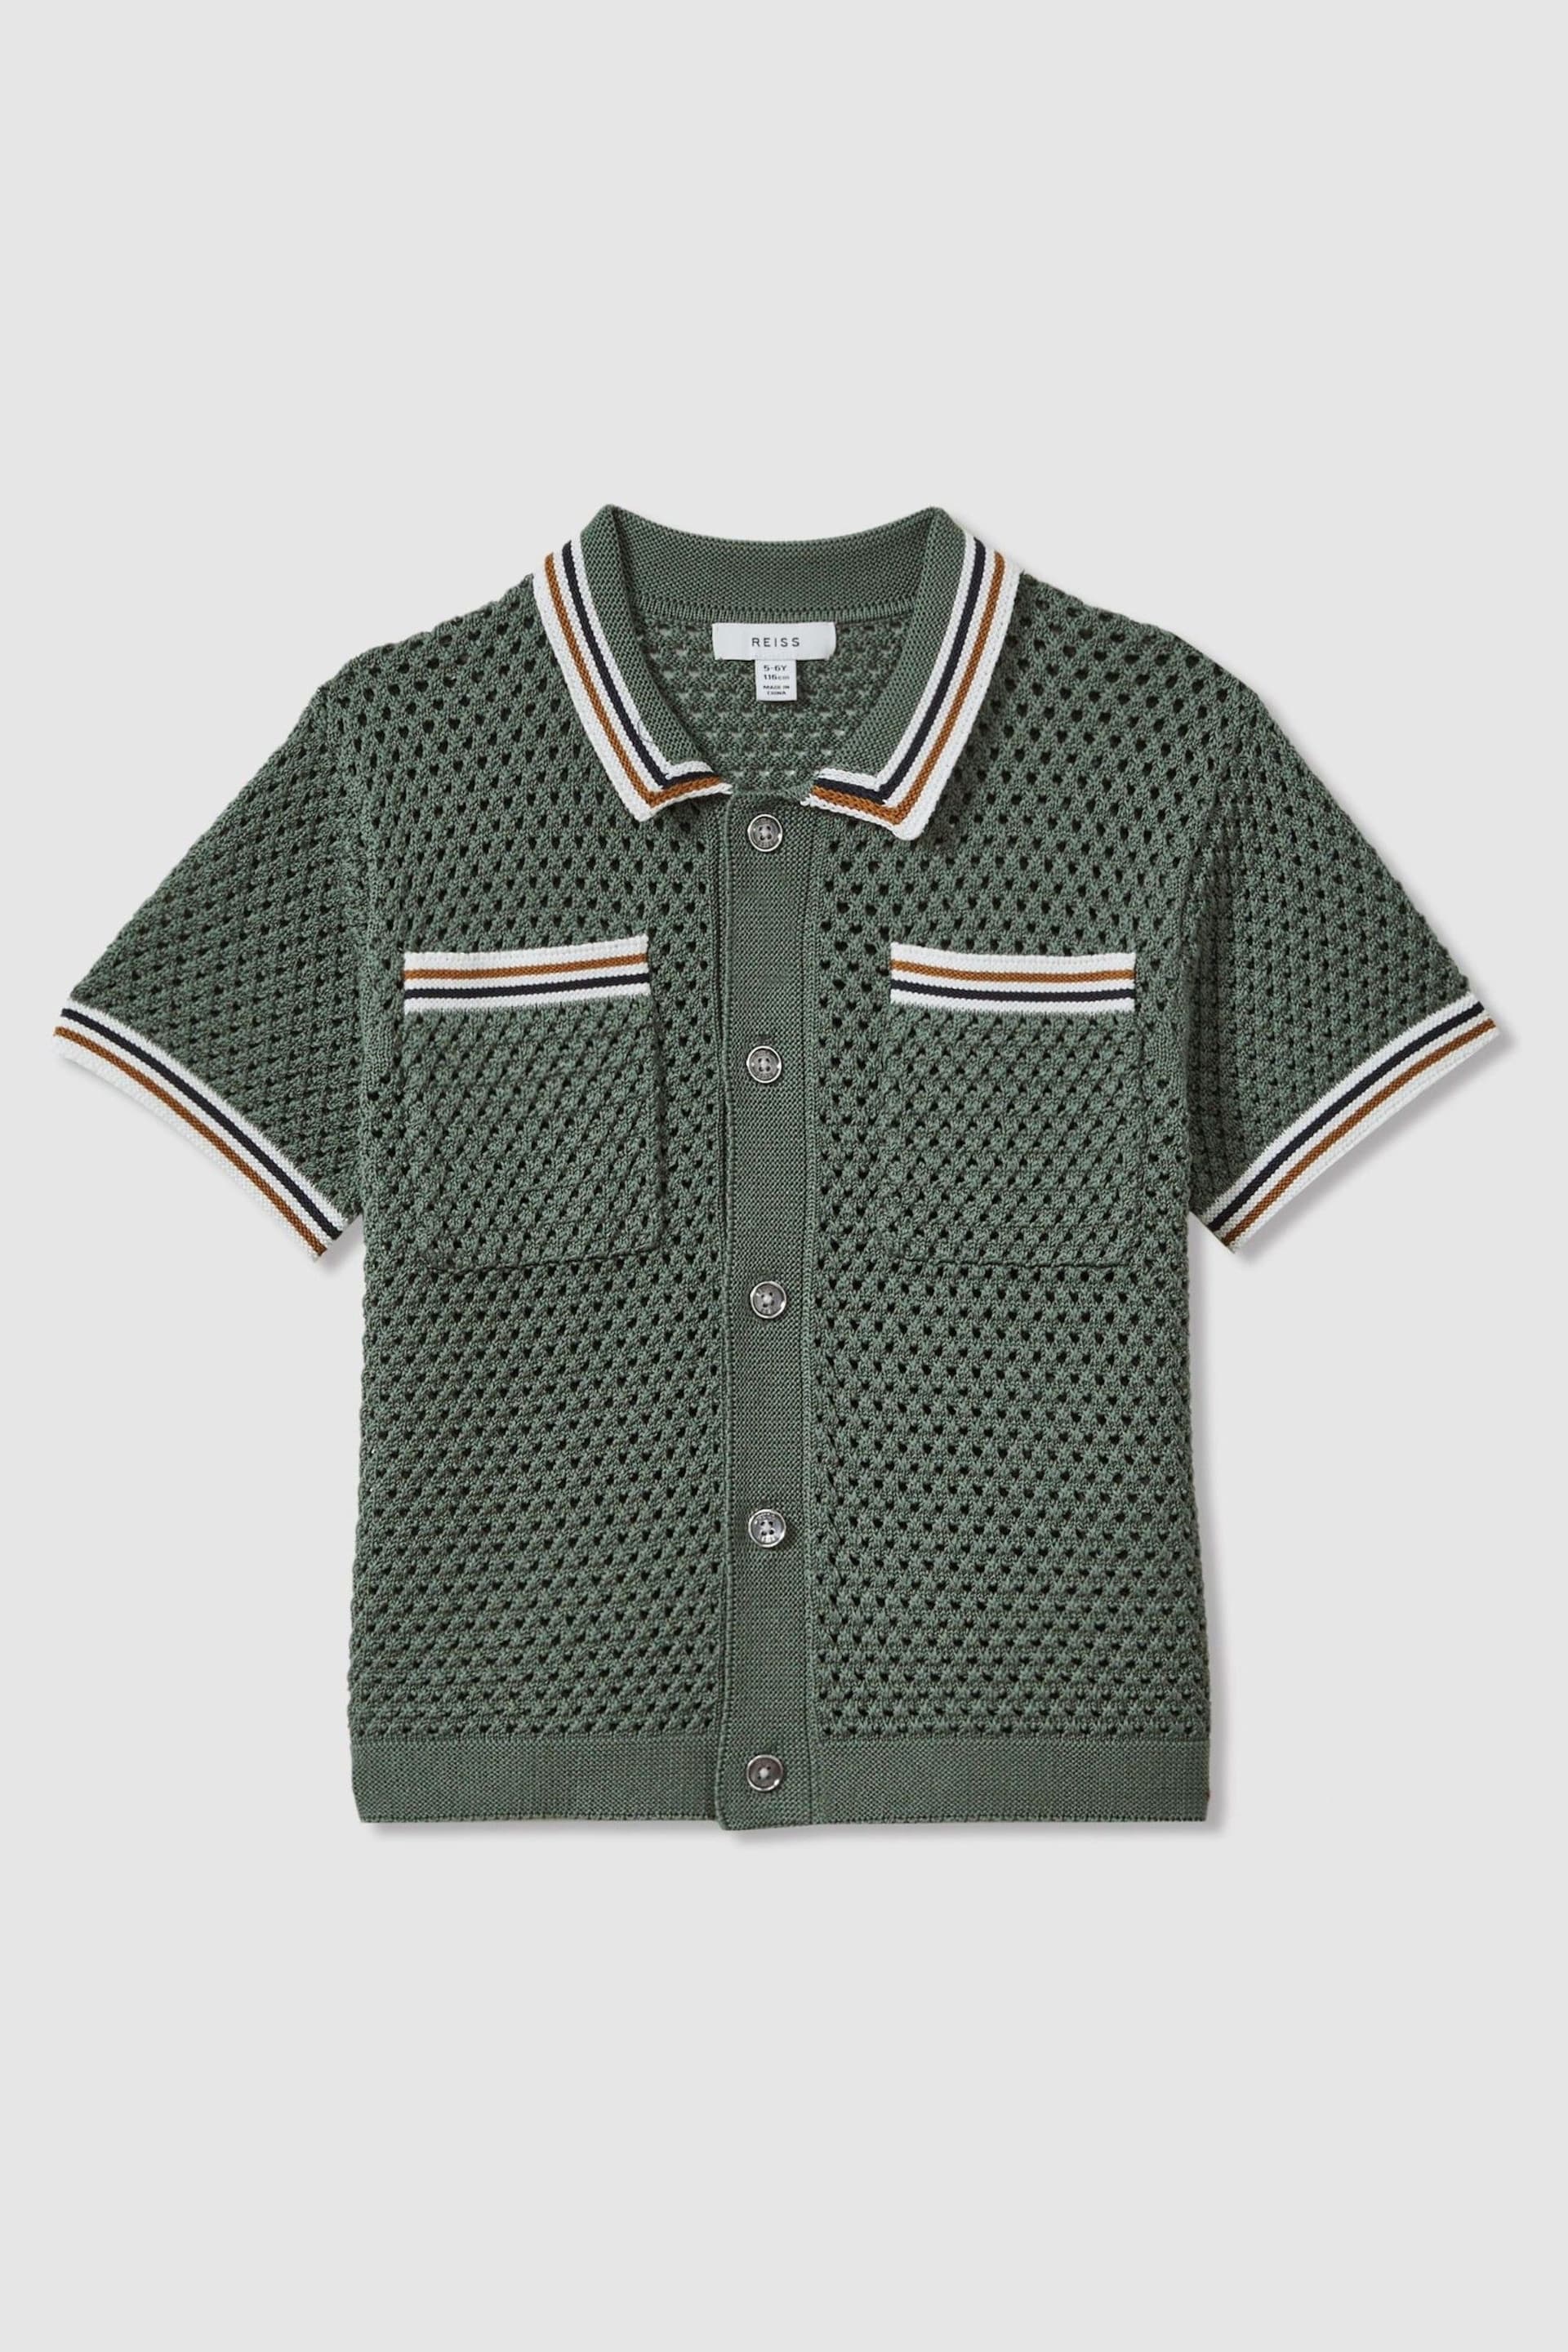 Reiss Dark Sage Green Coulson Teen Crochet Contrast Trim Shirt - Image 1 of 5